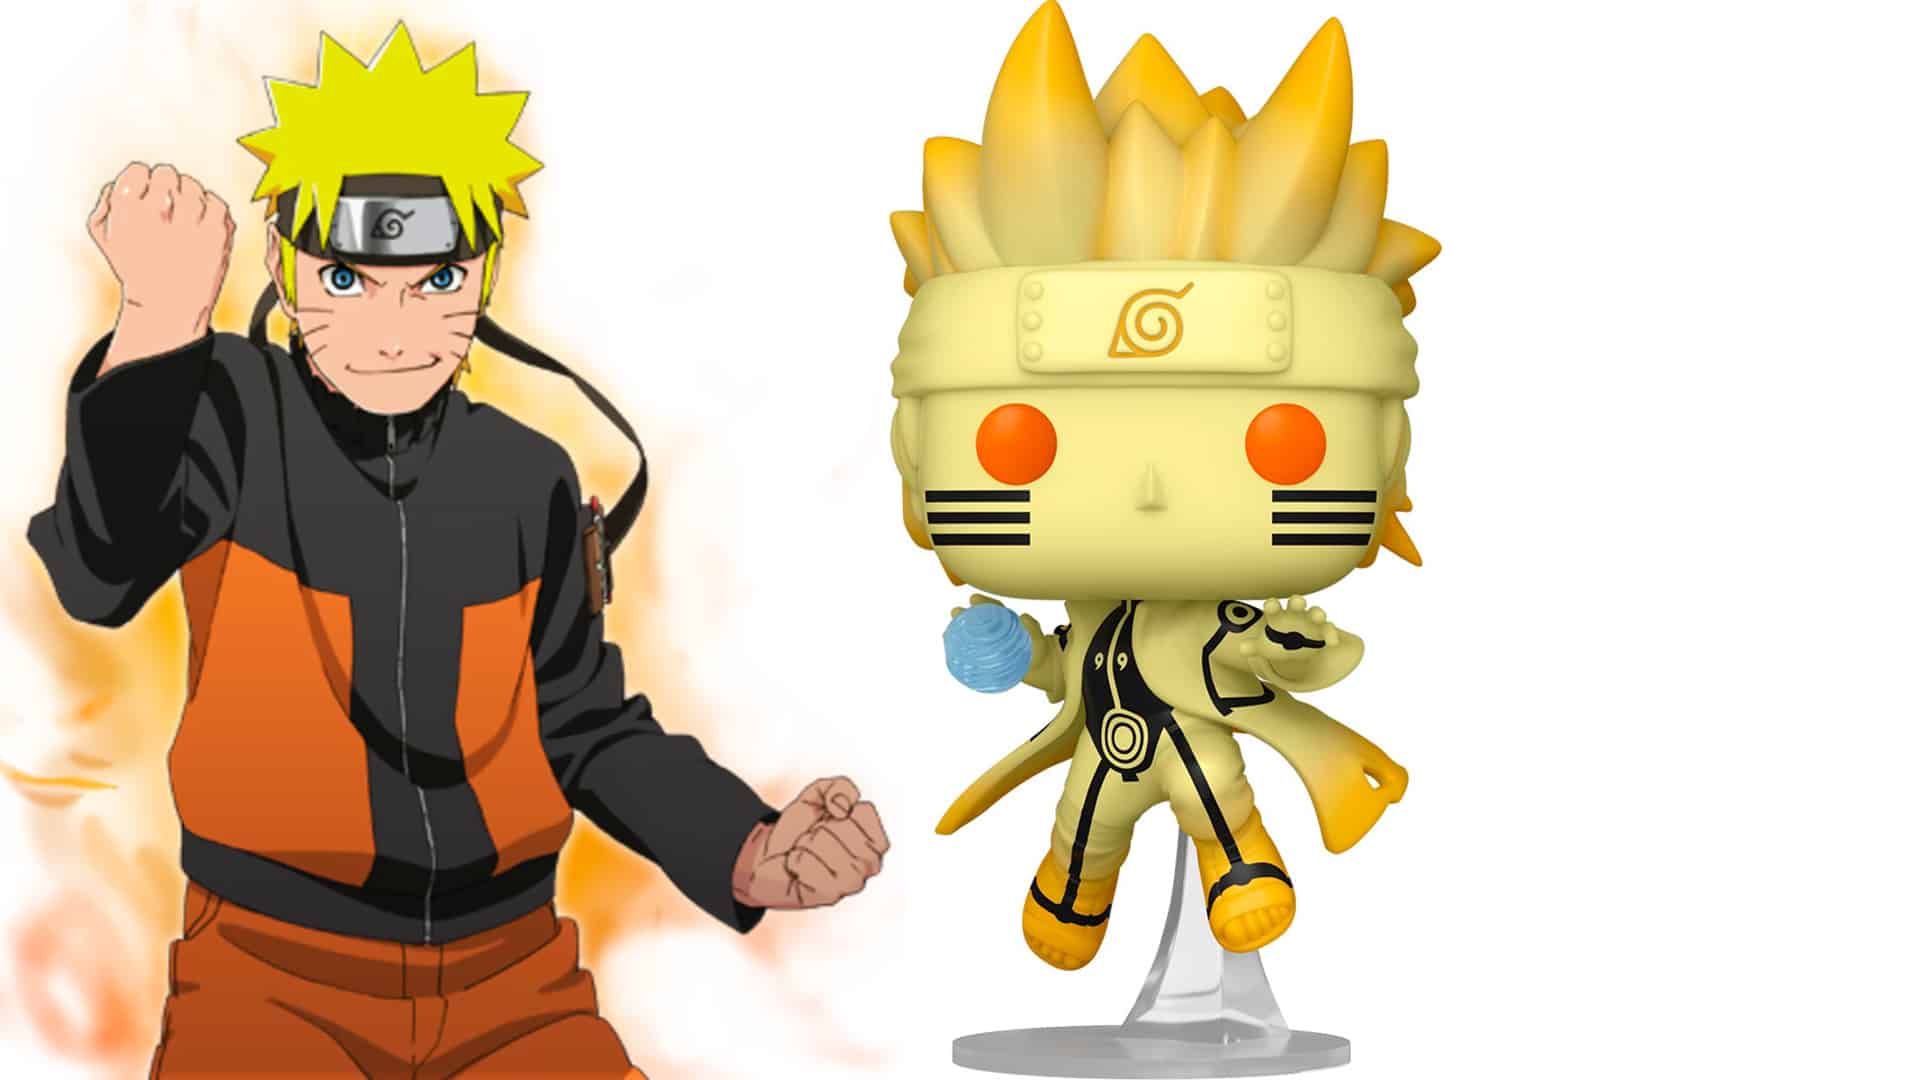 Junji Ito Discusses the Possibility of a Naruto x Uzumaki Crossover